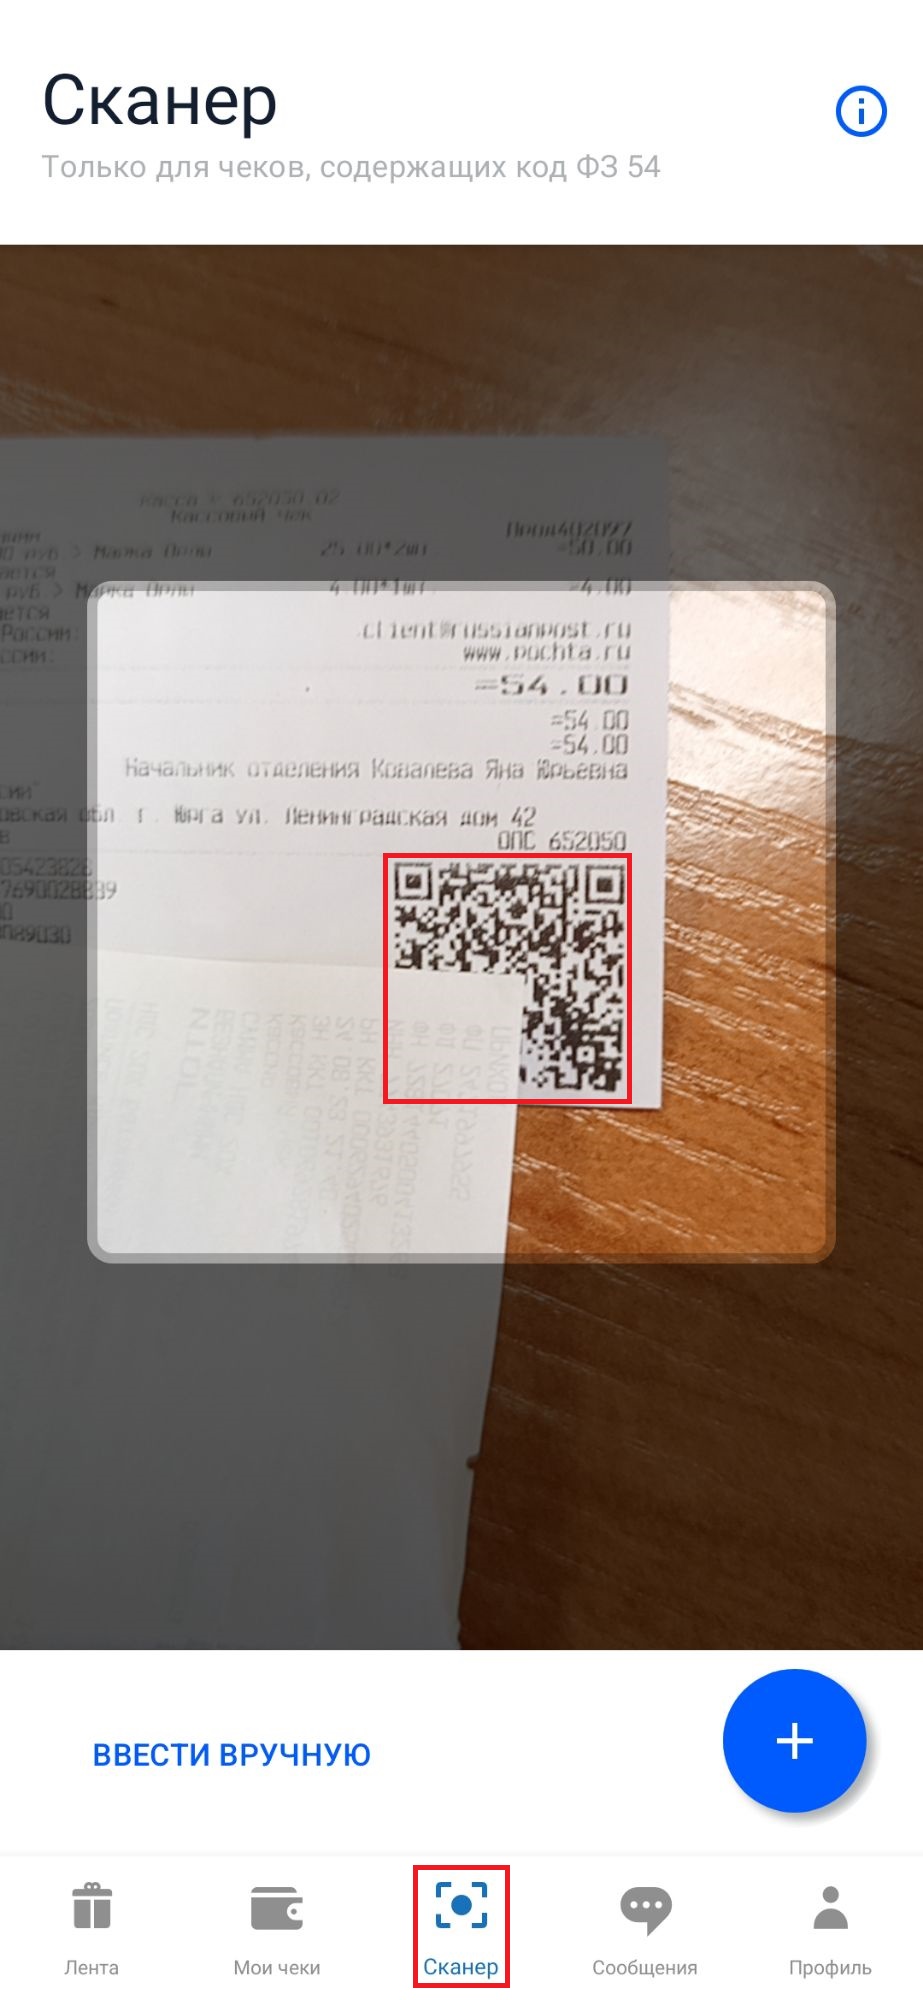 3 - Сканирование QR-кода.jpg